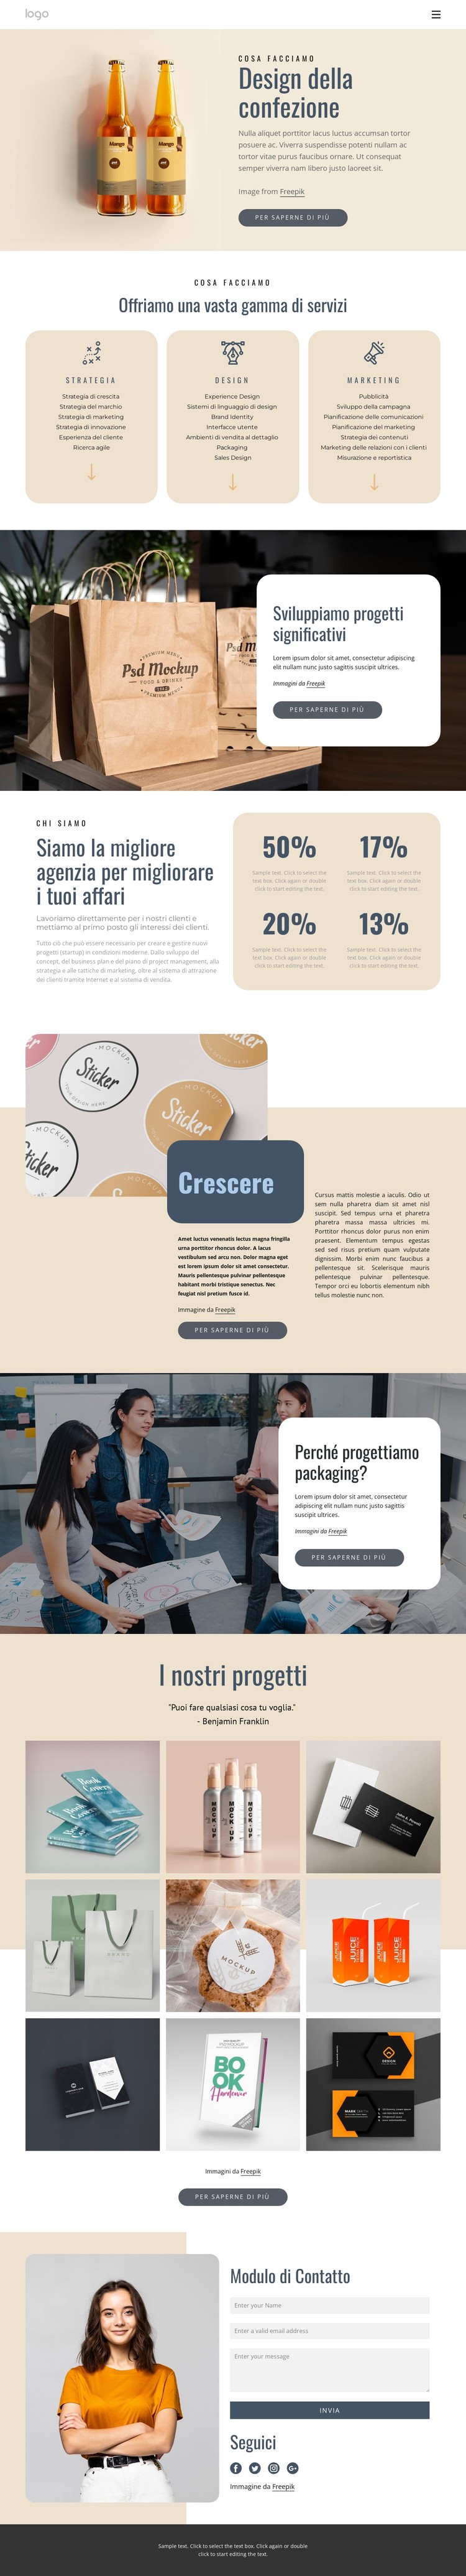 Design del marchio e del packaging Modello CSS